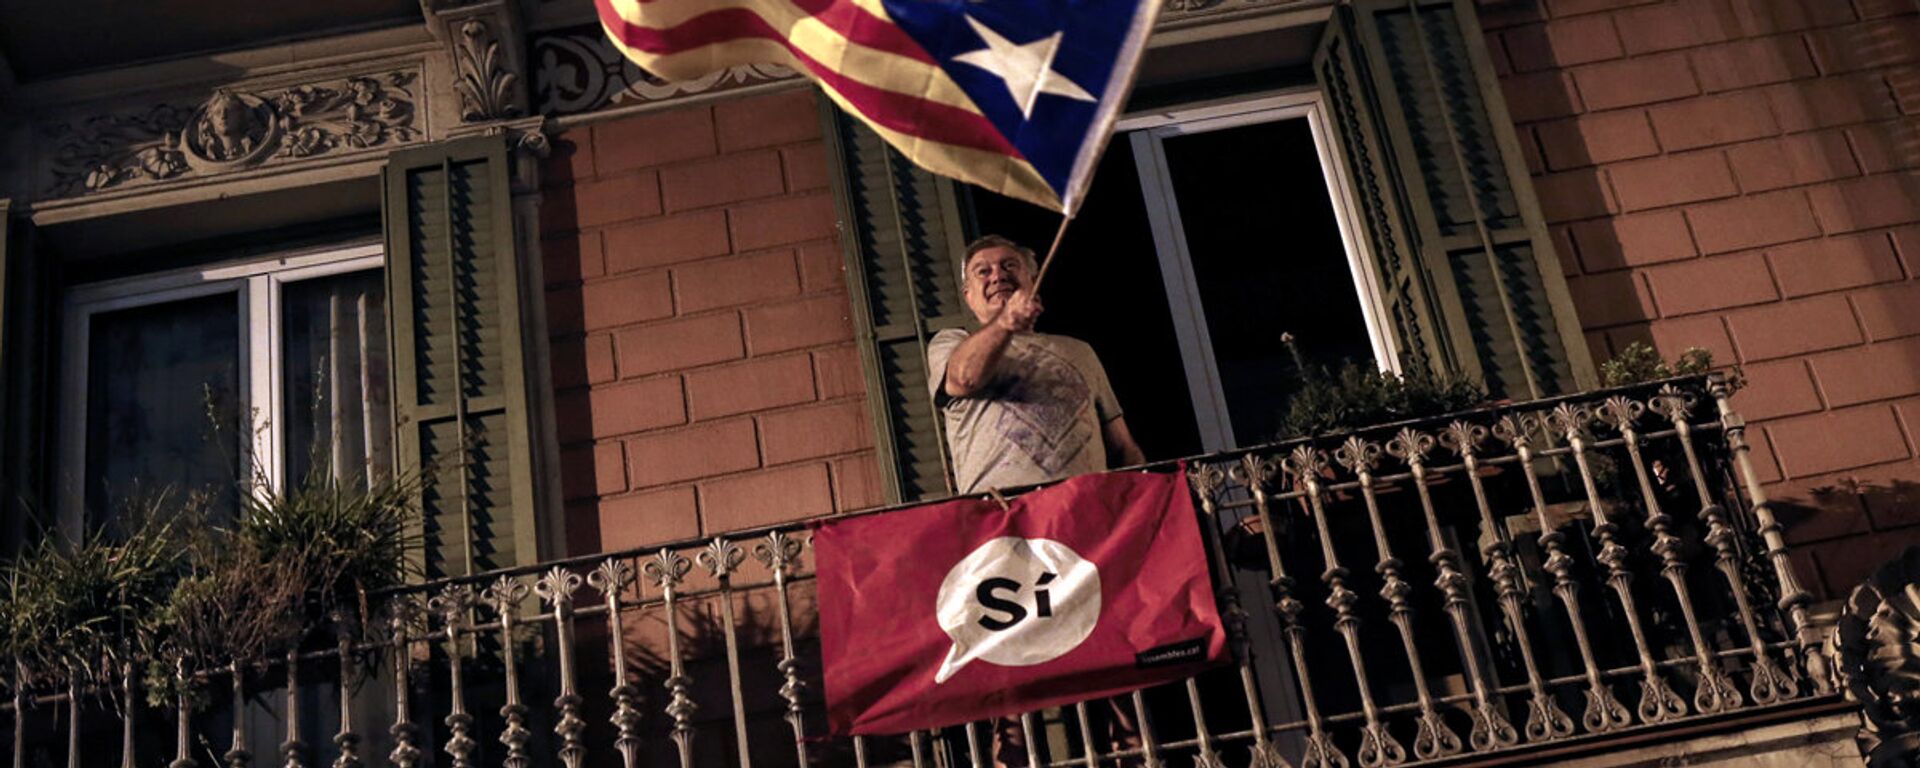 Мужчина на балконе с флагом Каталонии - Sputnik Латвия, 1920, 16.03.2017